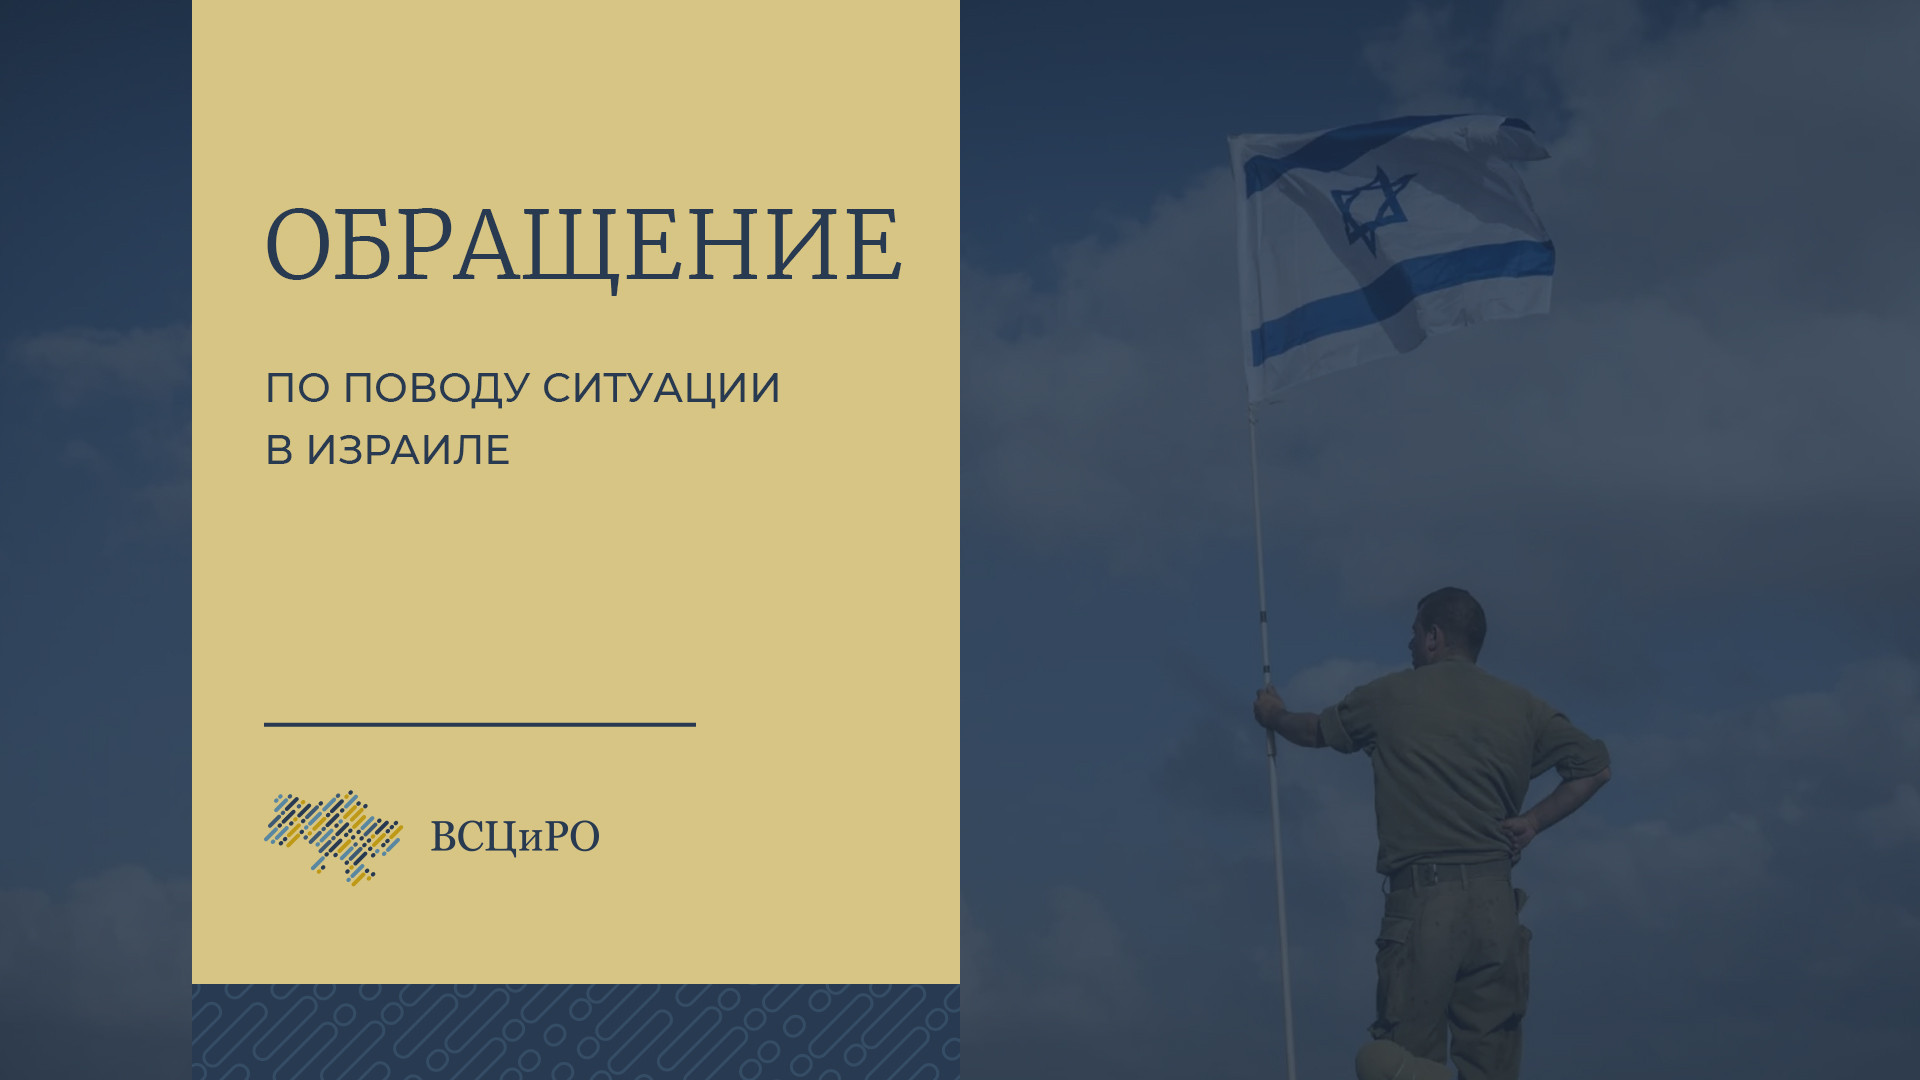 «Мы солидарны с государством и народом Израиля», - обращение Всеукраинского Совета Церквей